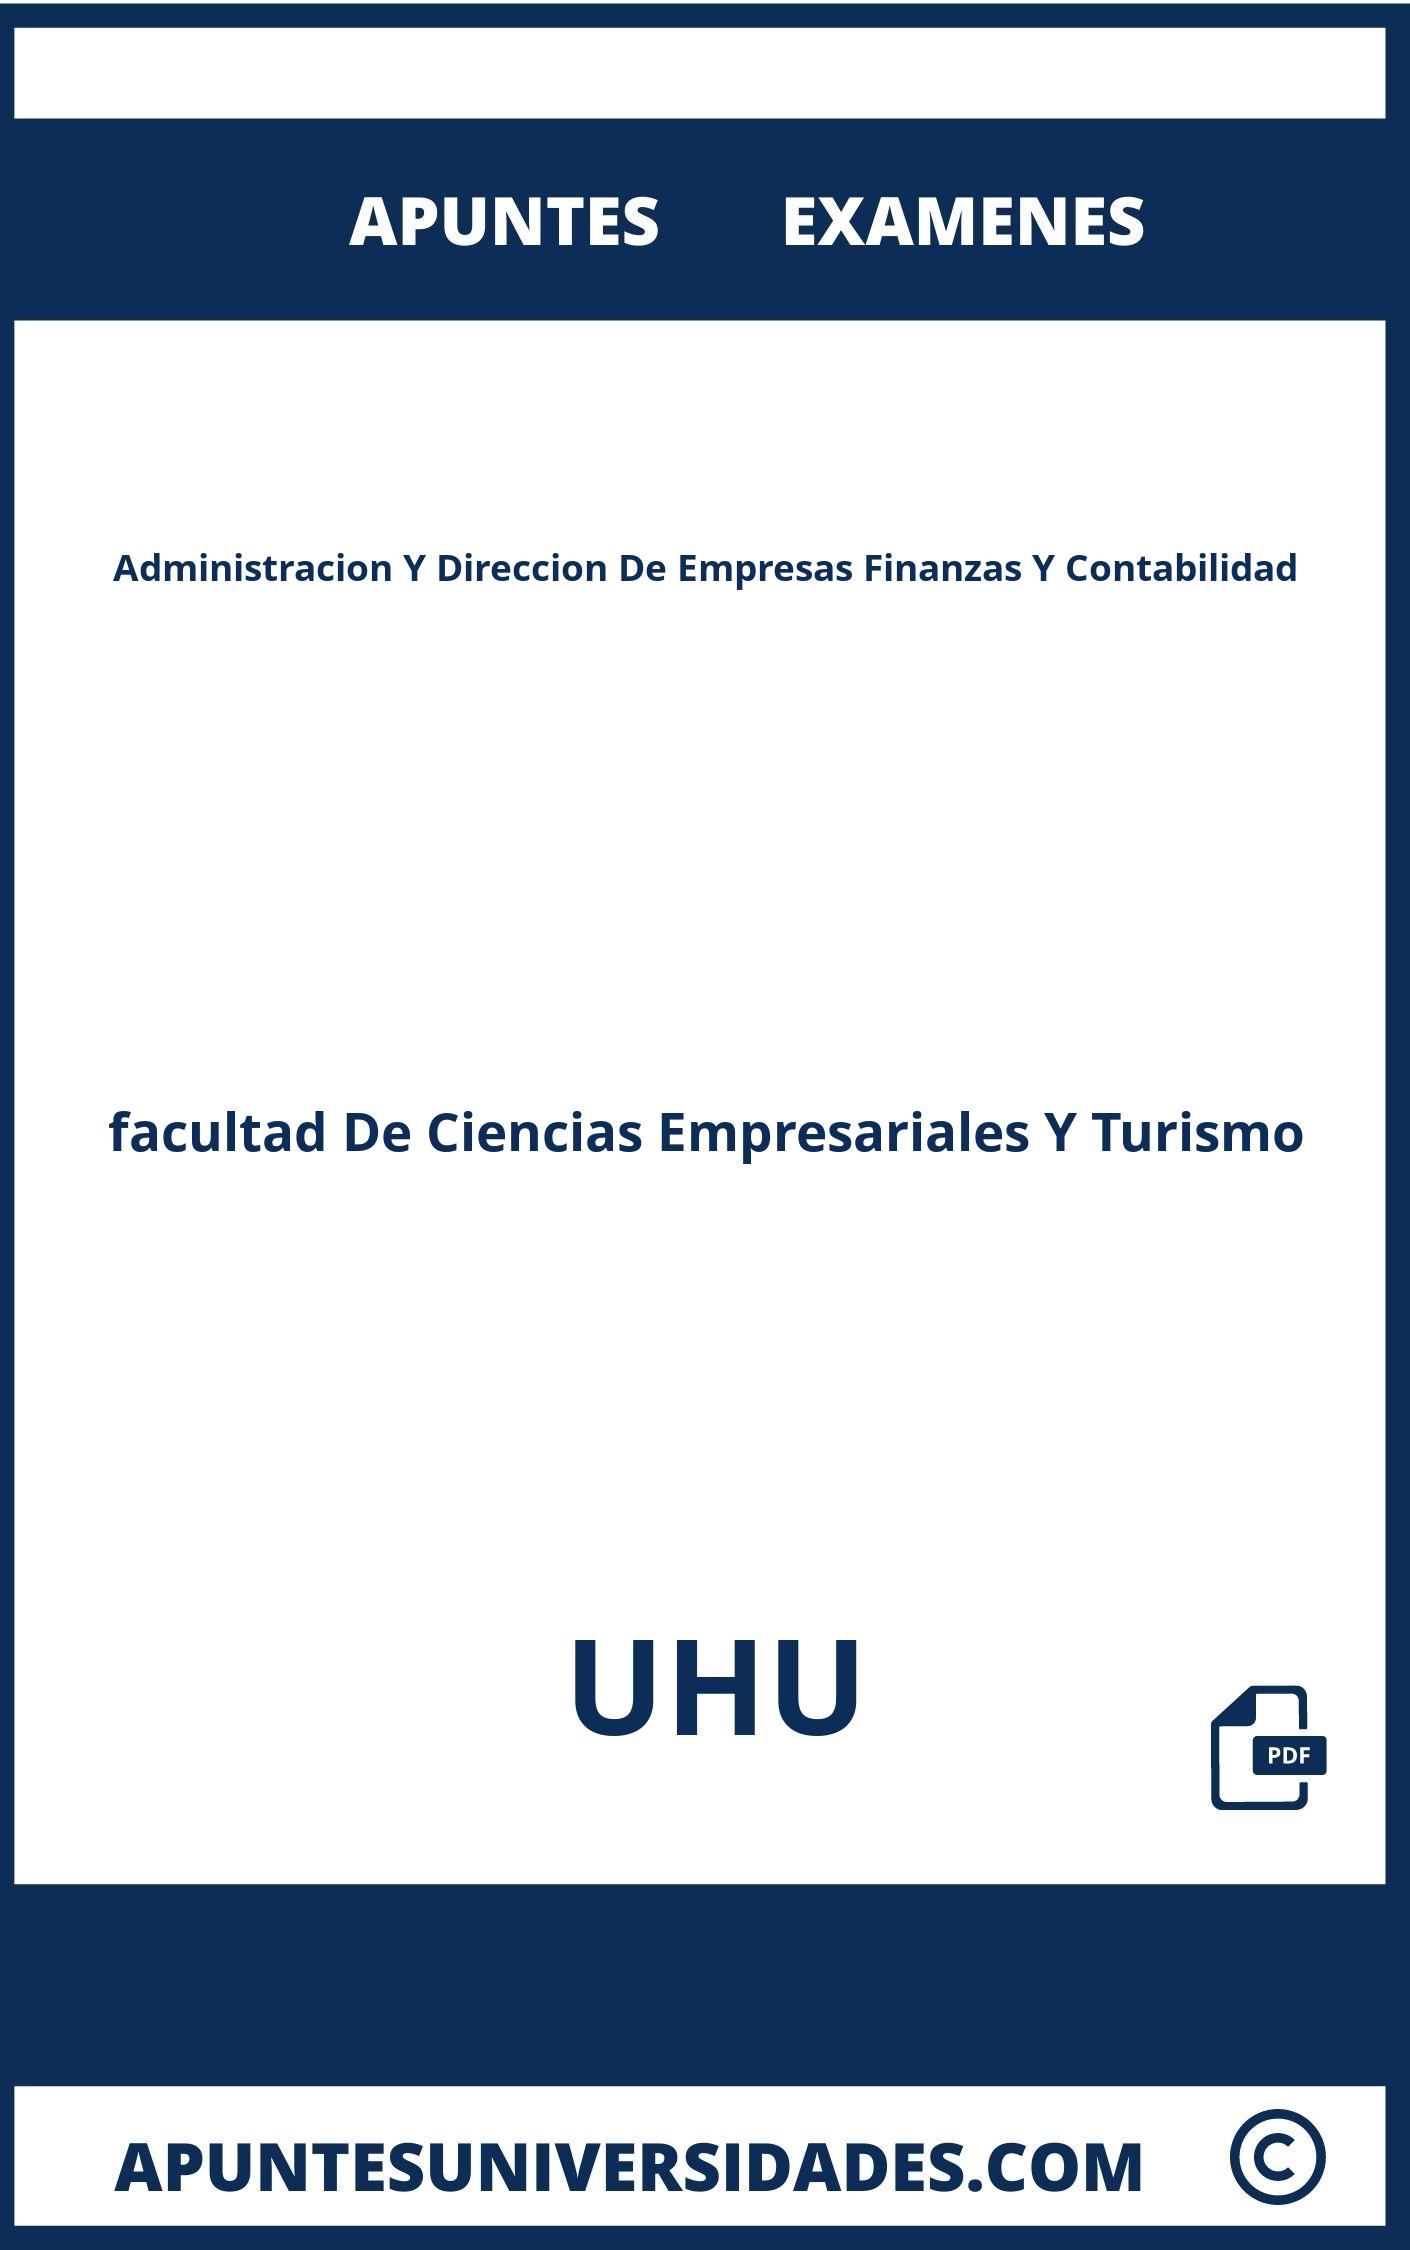 Examenes y Apuntes Administracion Y Direccion De Empresas Finanzas Y Contabilidad UHU